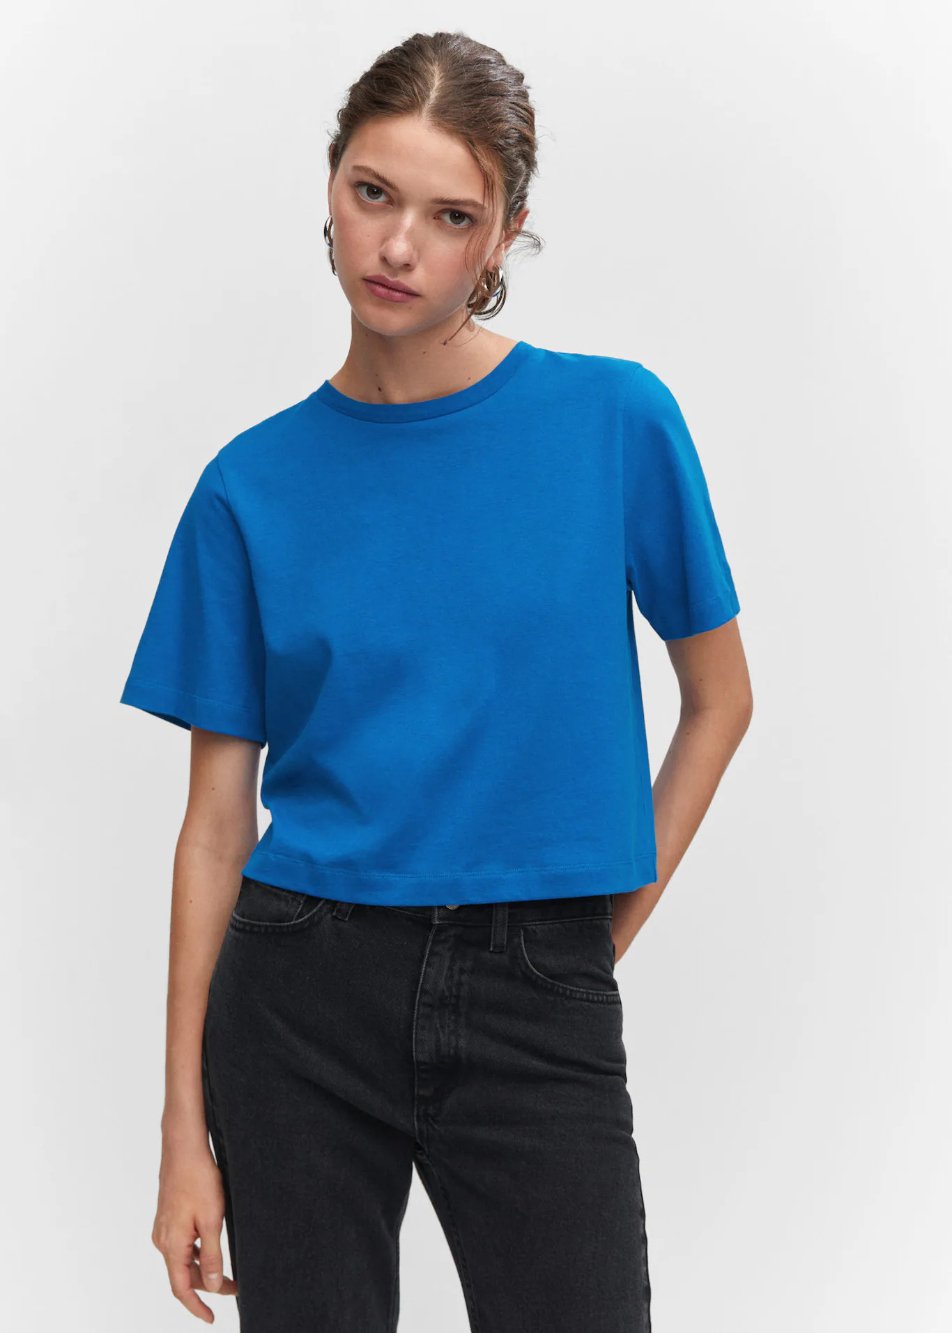 MANGO – T-shirt coton manches courtes à 12,99 € chez Mango